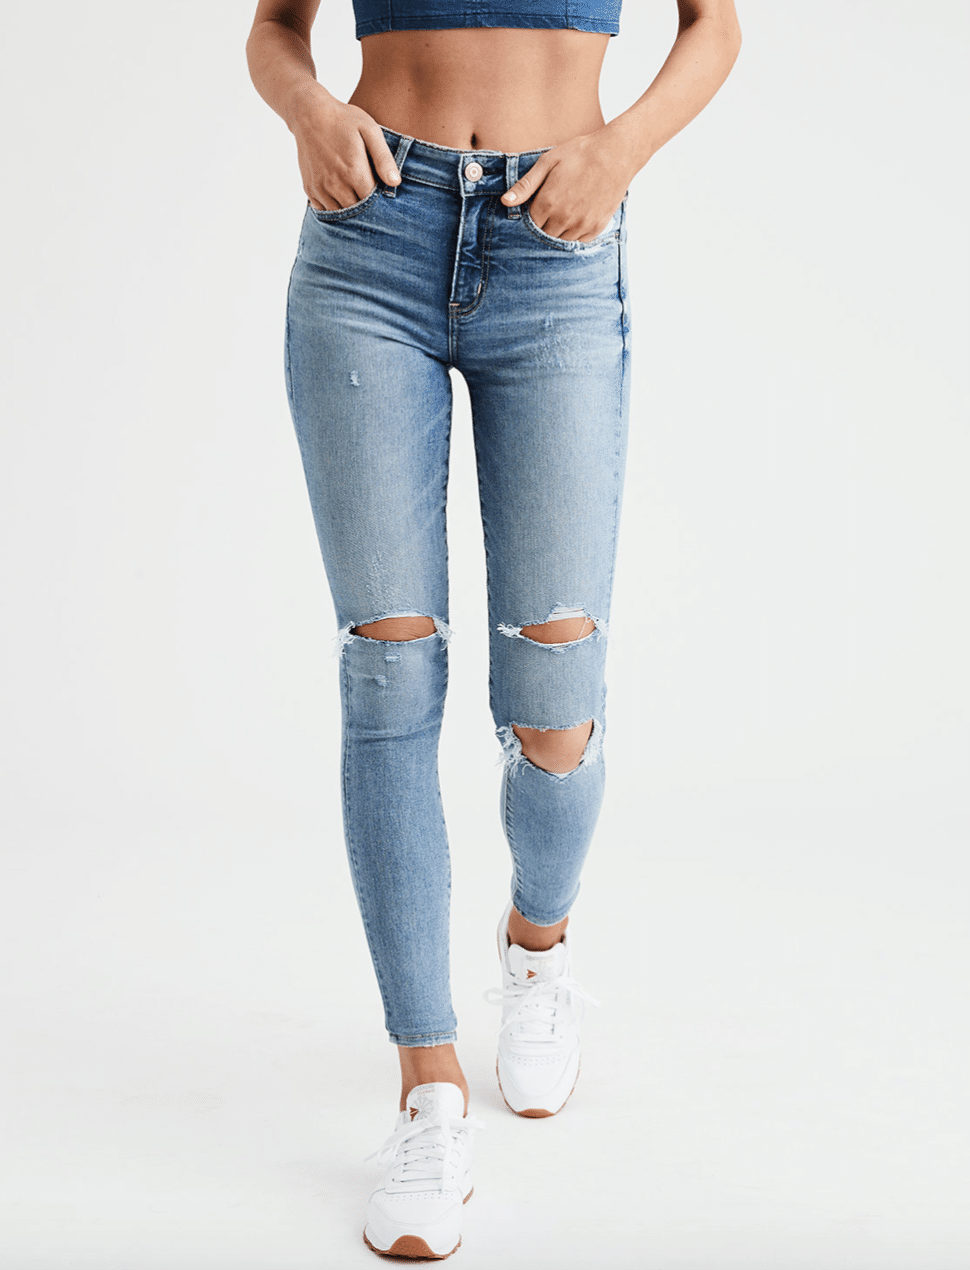 Pacsun Jeans Size Chart